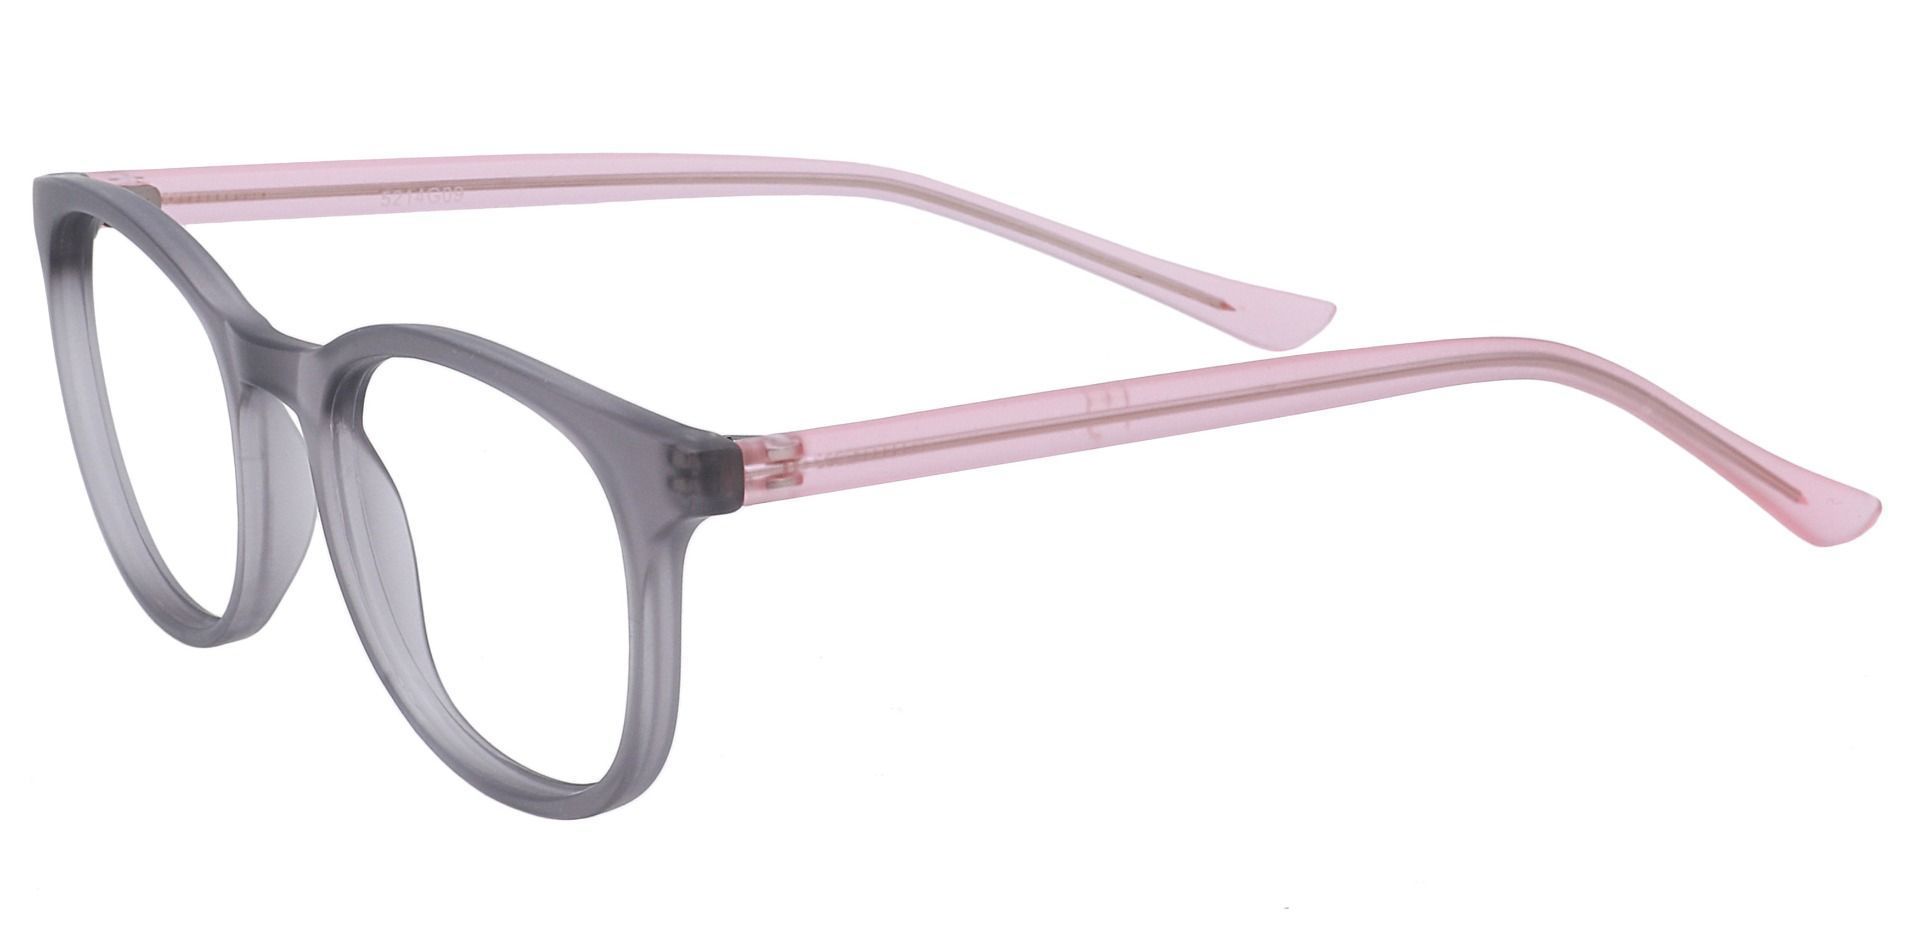 Gretchen Oval Eyeglasses Frame - Matte Grey Crystal